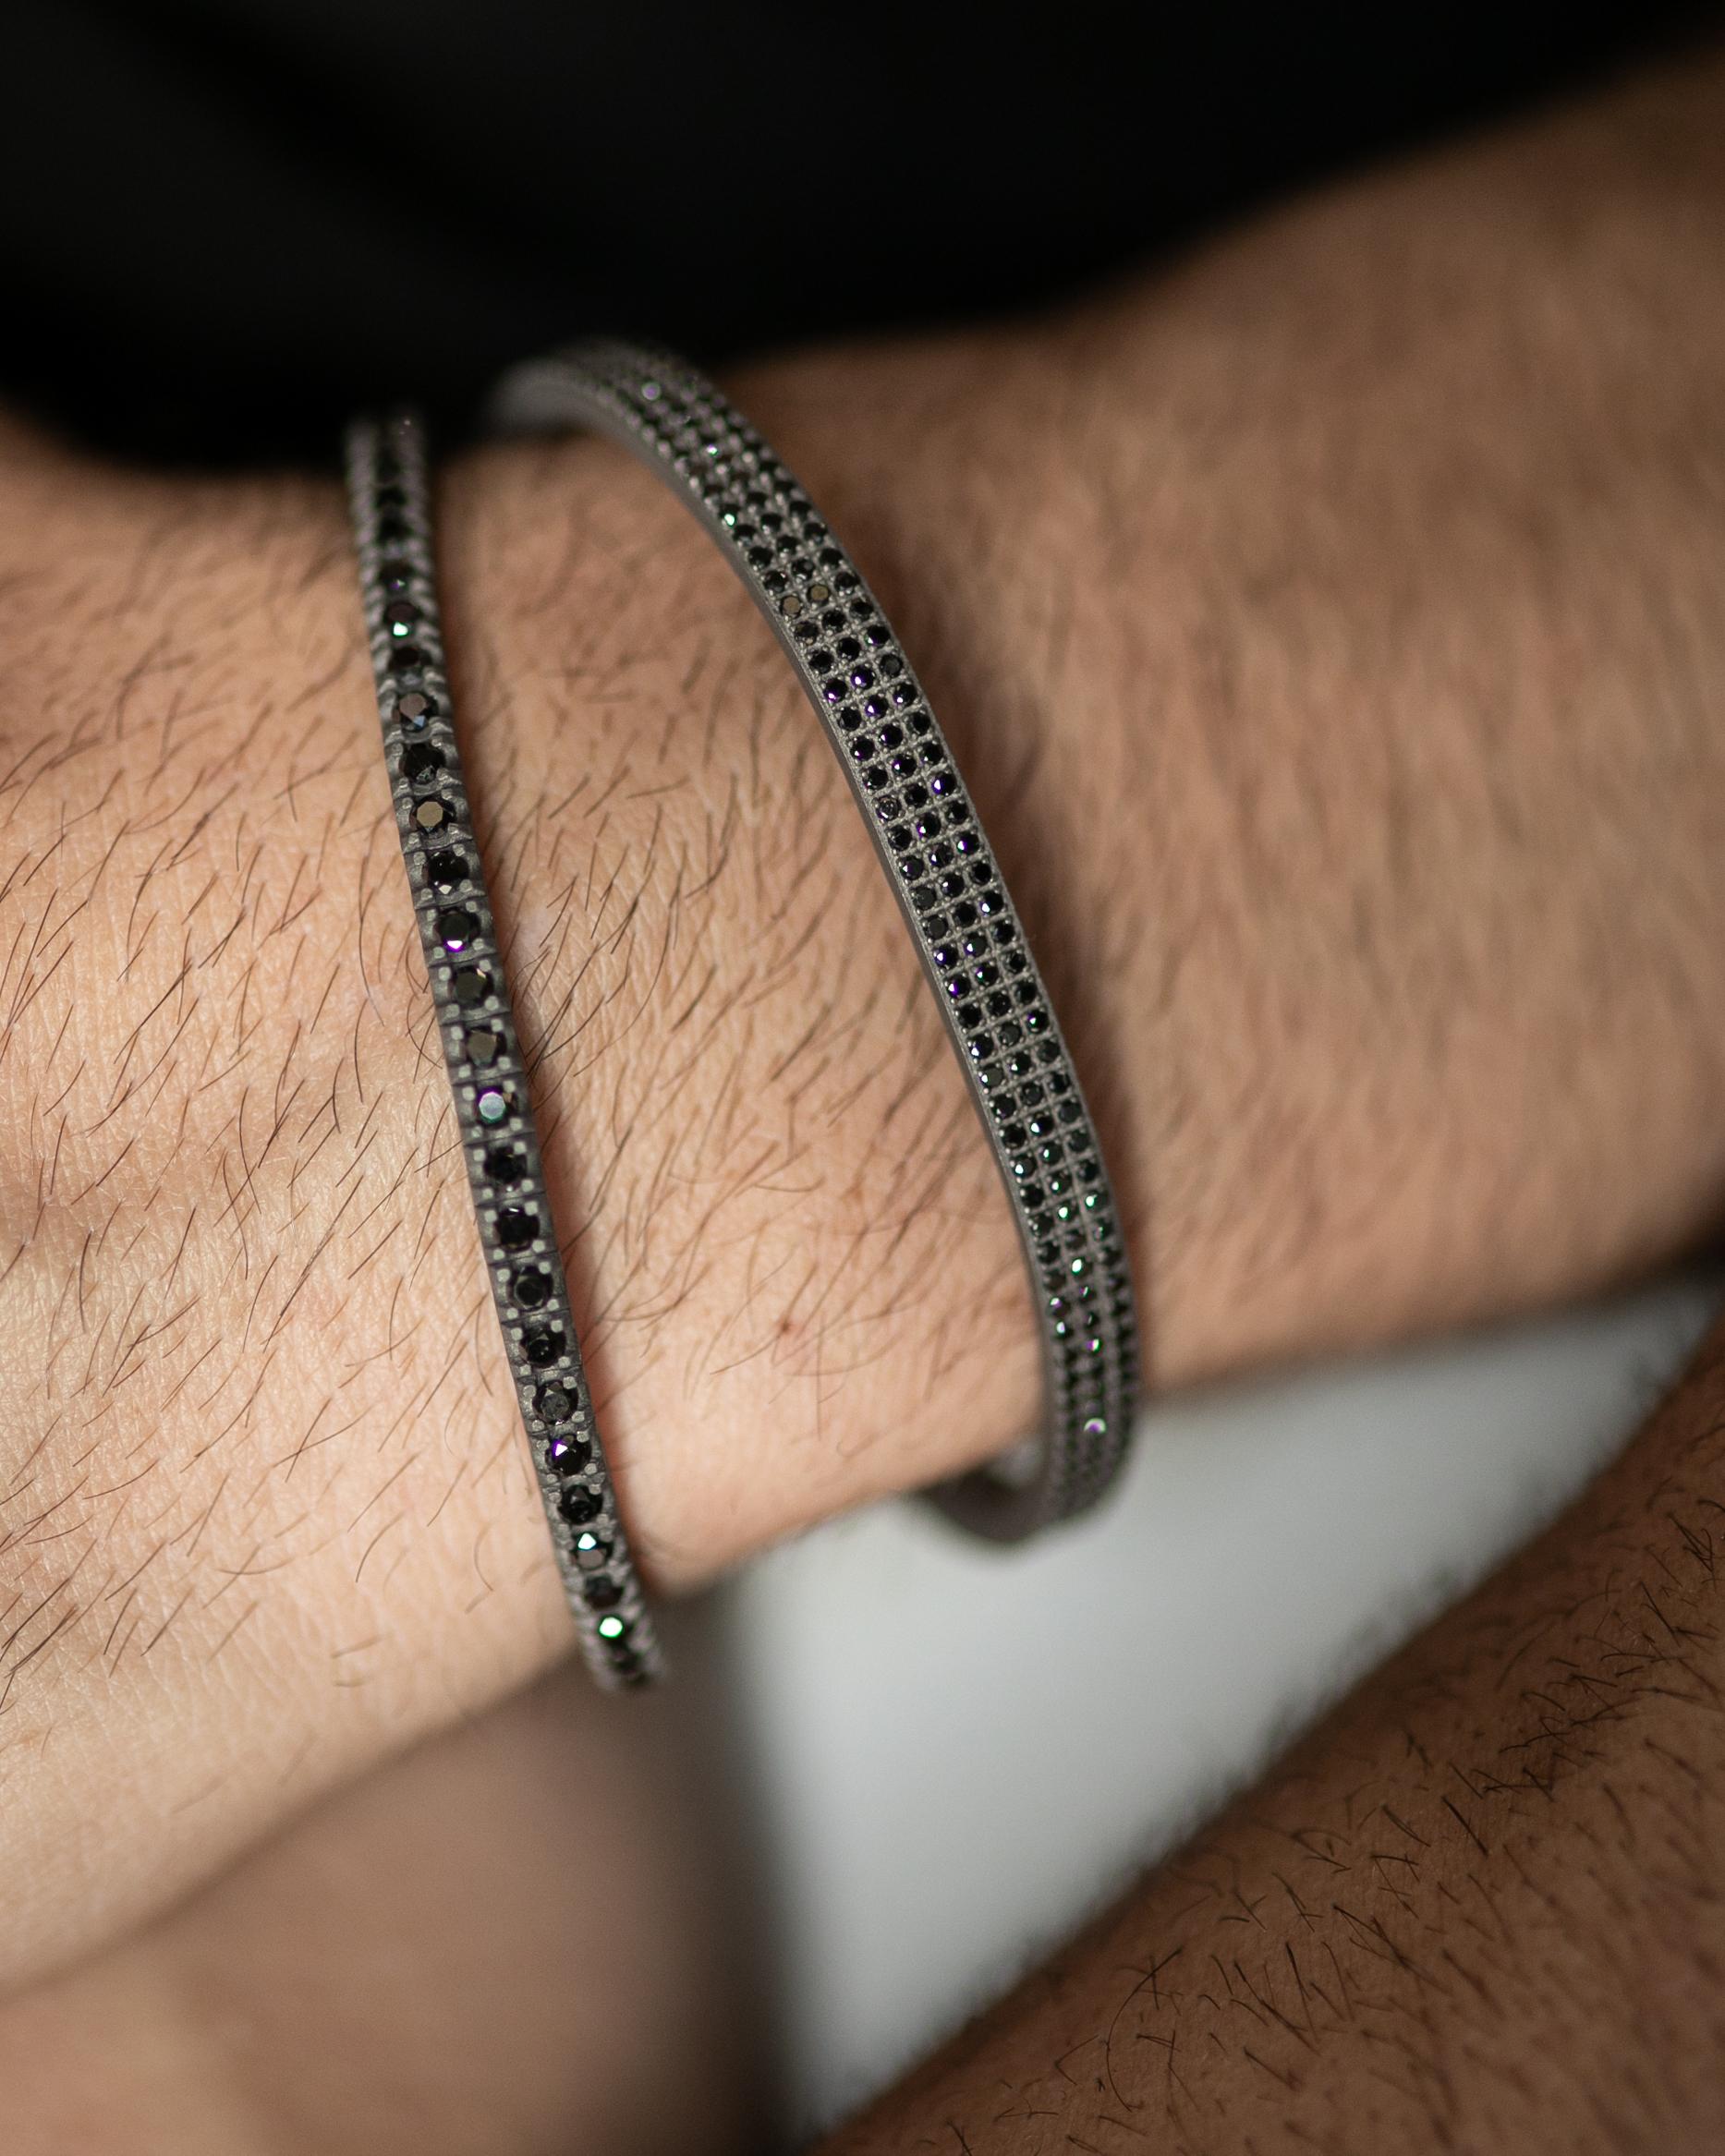 Das flexible Titanarmband ist aus unserer Men's Collection. Das Armband ist mit 58 wunderschönen schwarzen Naturdiamanten von insgesamt 3,36 Karat besetzt und mit Details aus 18 Karat Roségold versehen. Der Durchmesser des Armbands beträgt 6,5 cm.